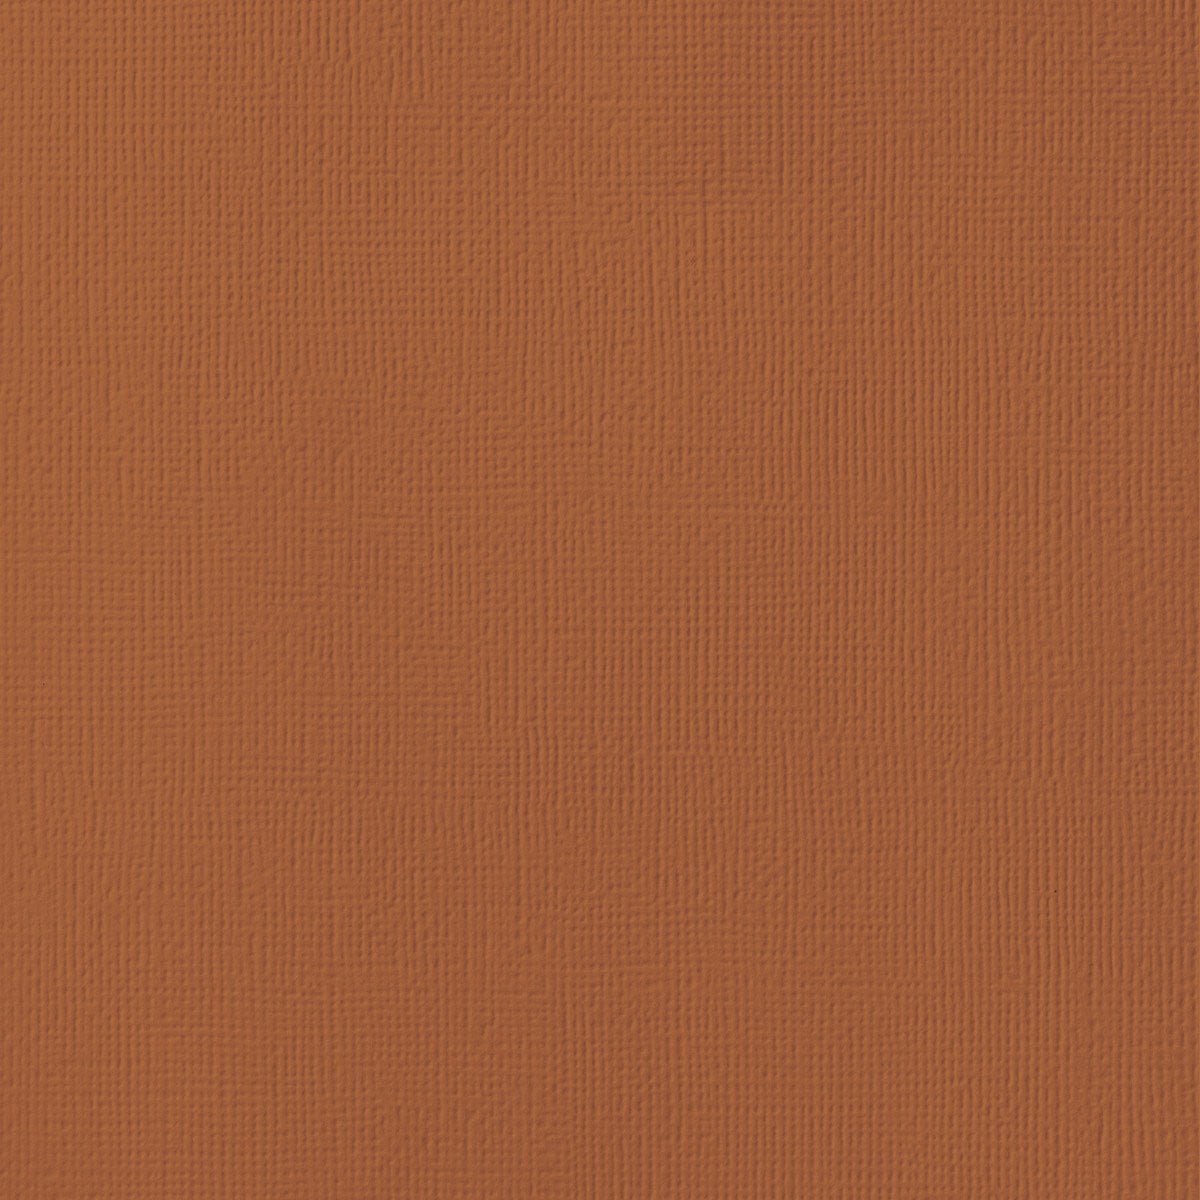 RUST orange cardstock - 12x12 inch - 80 lb - textured scrapbook paper - American Crafts